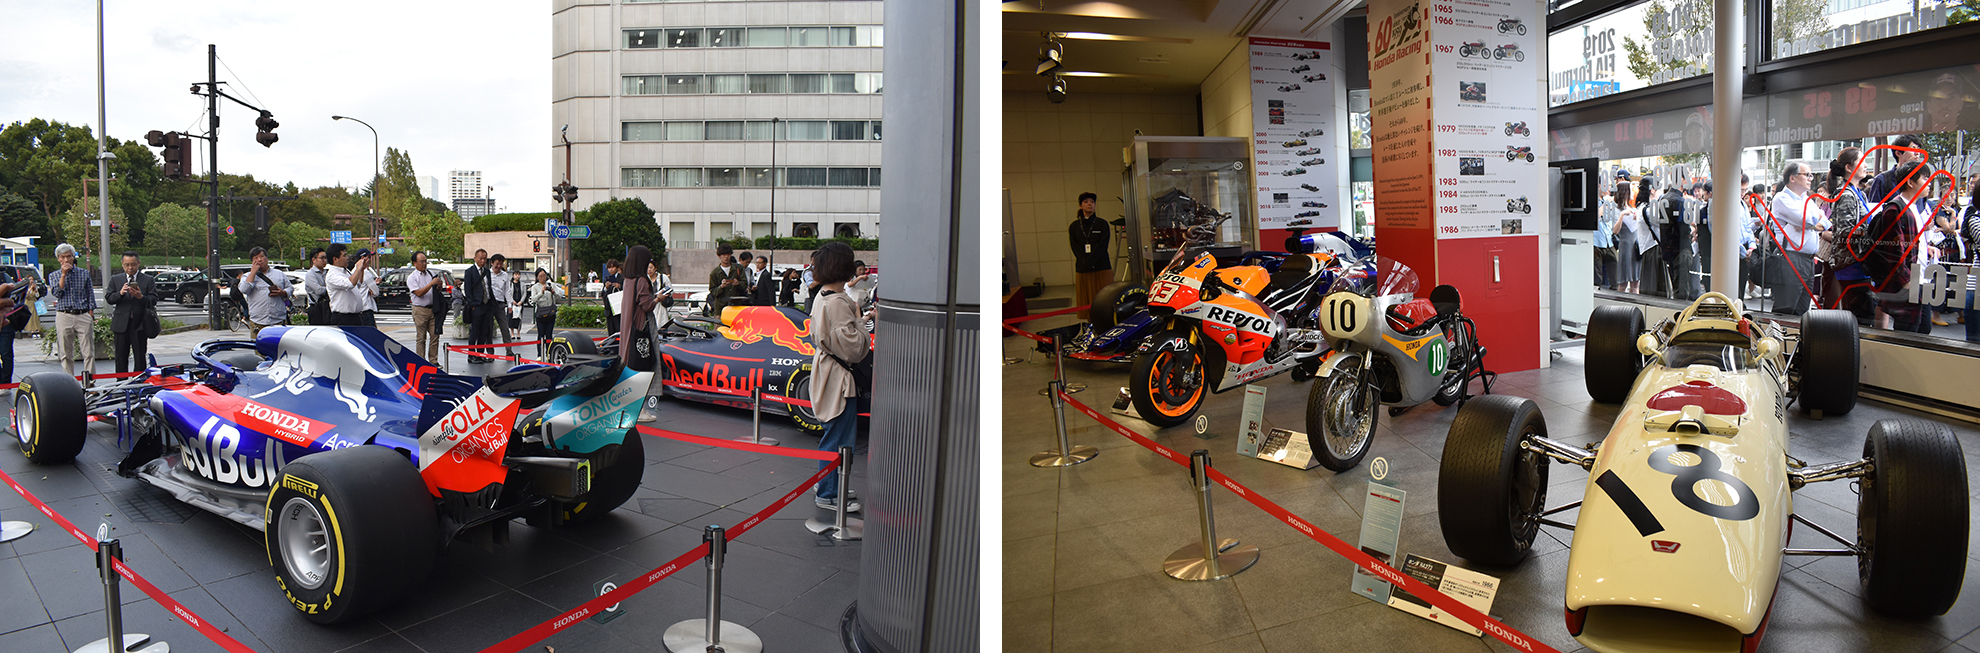 屋外、館内に、F1マシンや世界選手権参戦60周年を記念したマシンの展示